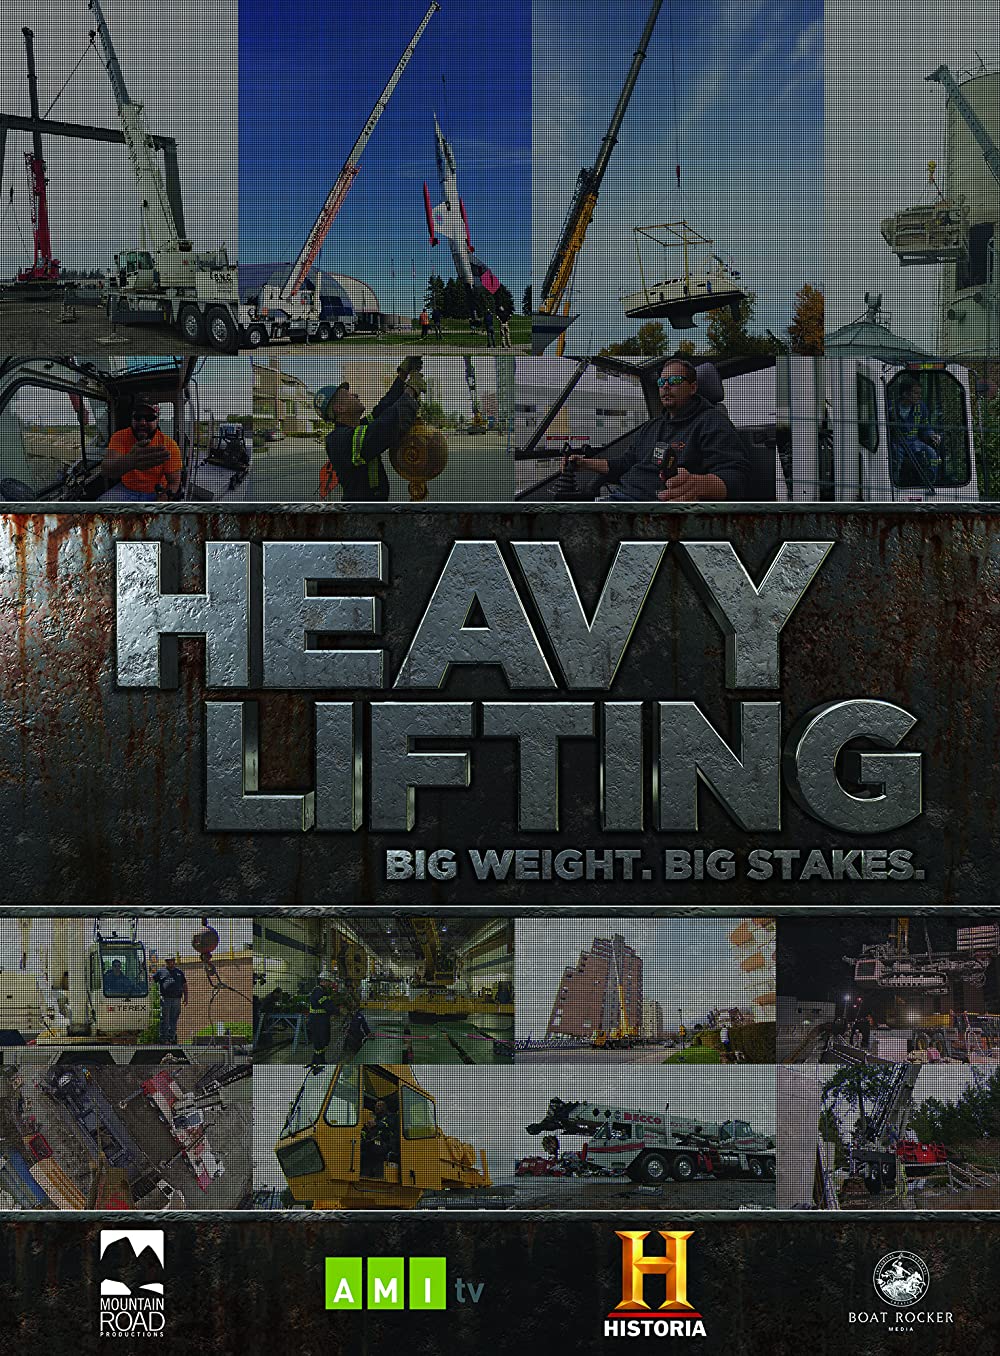 Heavy Lifting